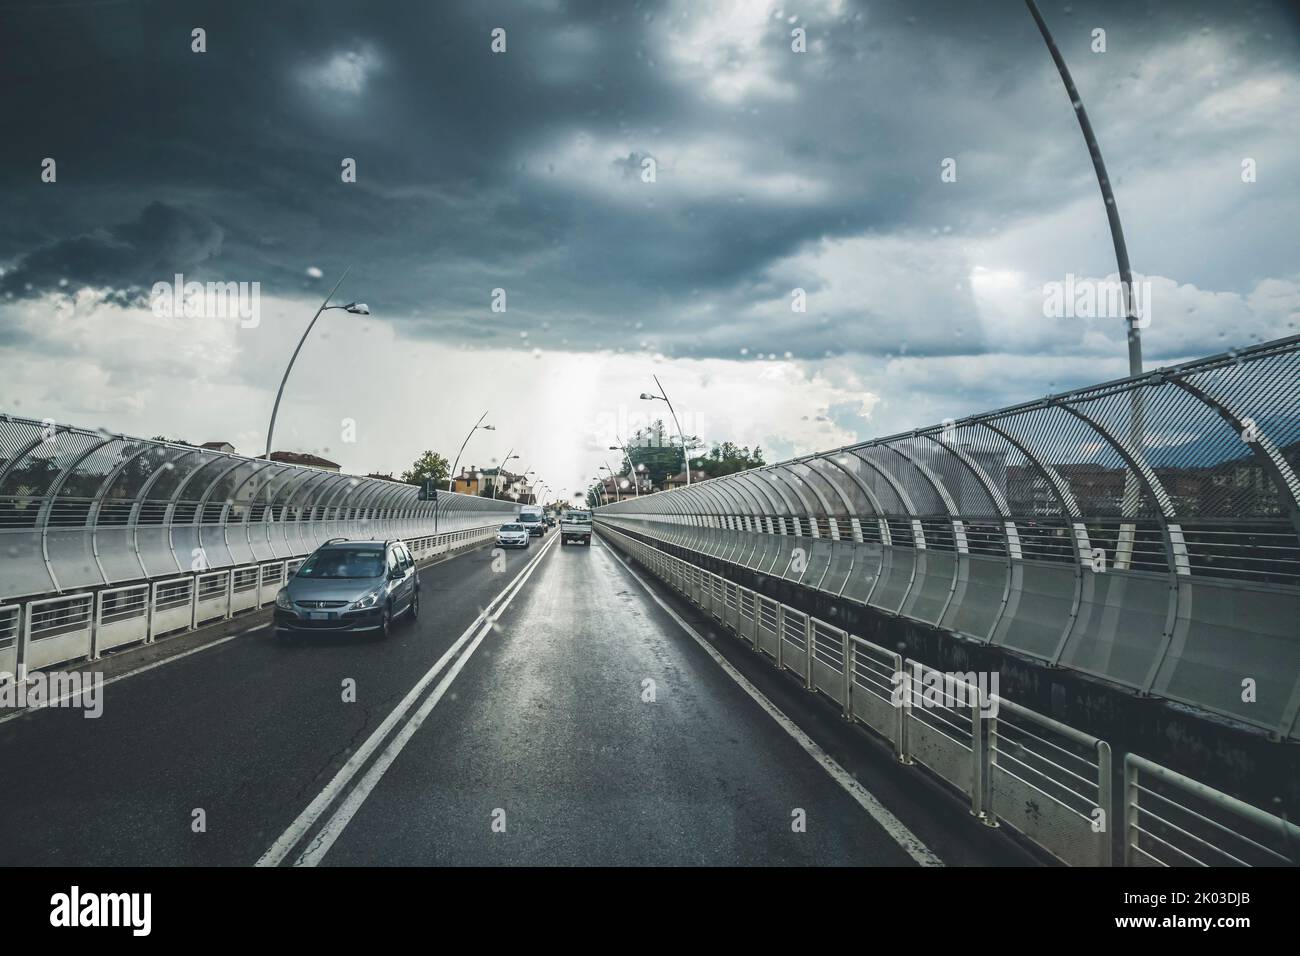 Italia, Veneto, Belluno. Vista sulla strada dall'interno di un'auto, con cielo spettacolare e temporale imminente Foto Stock